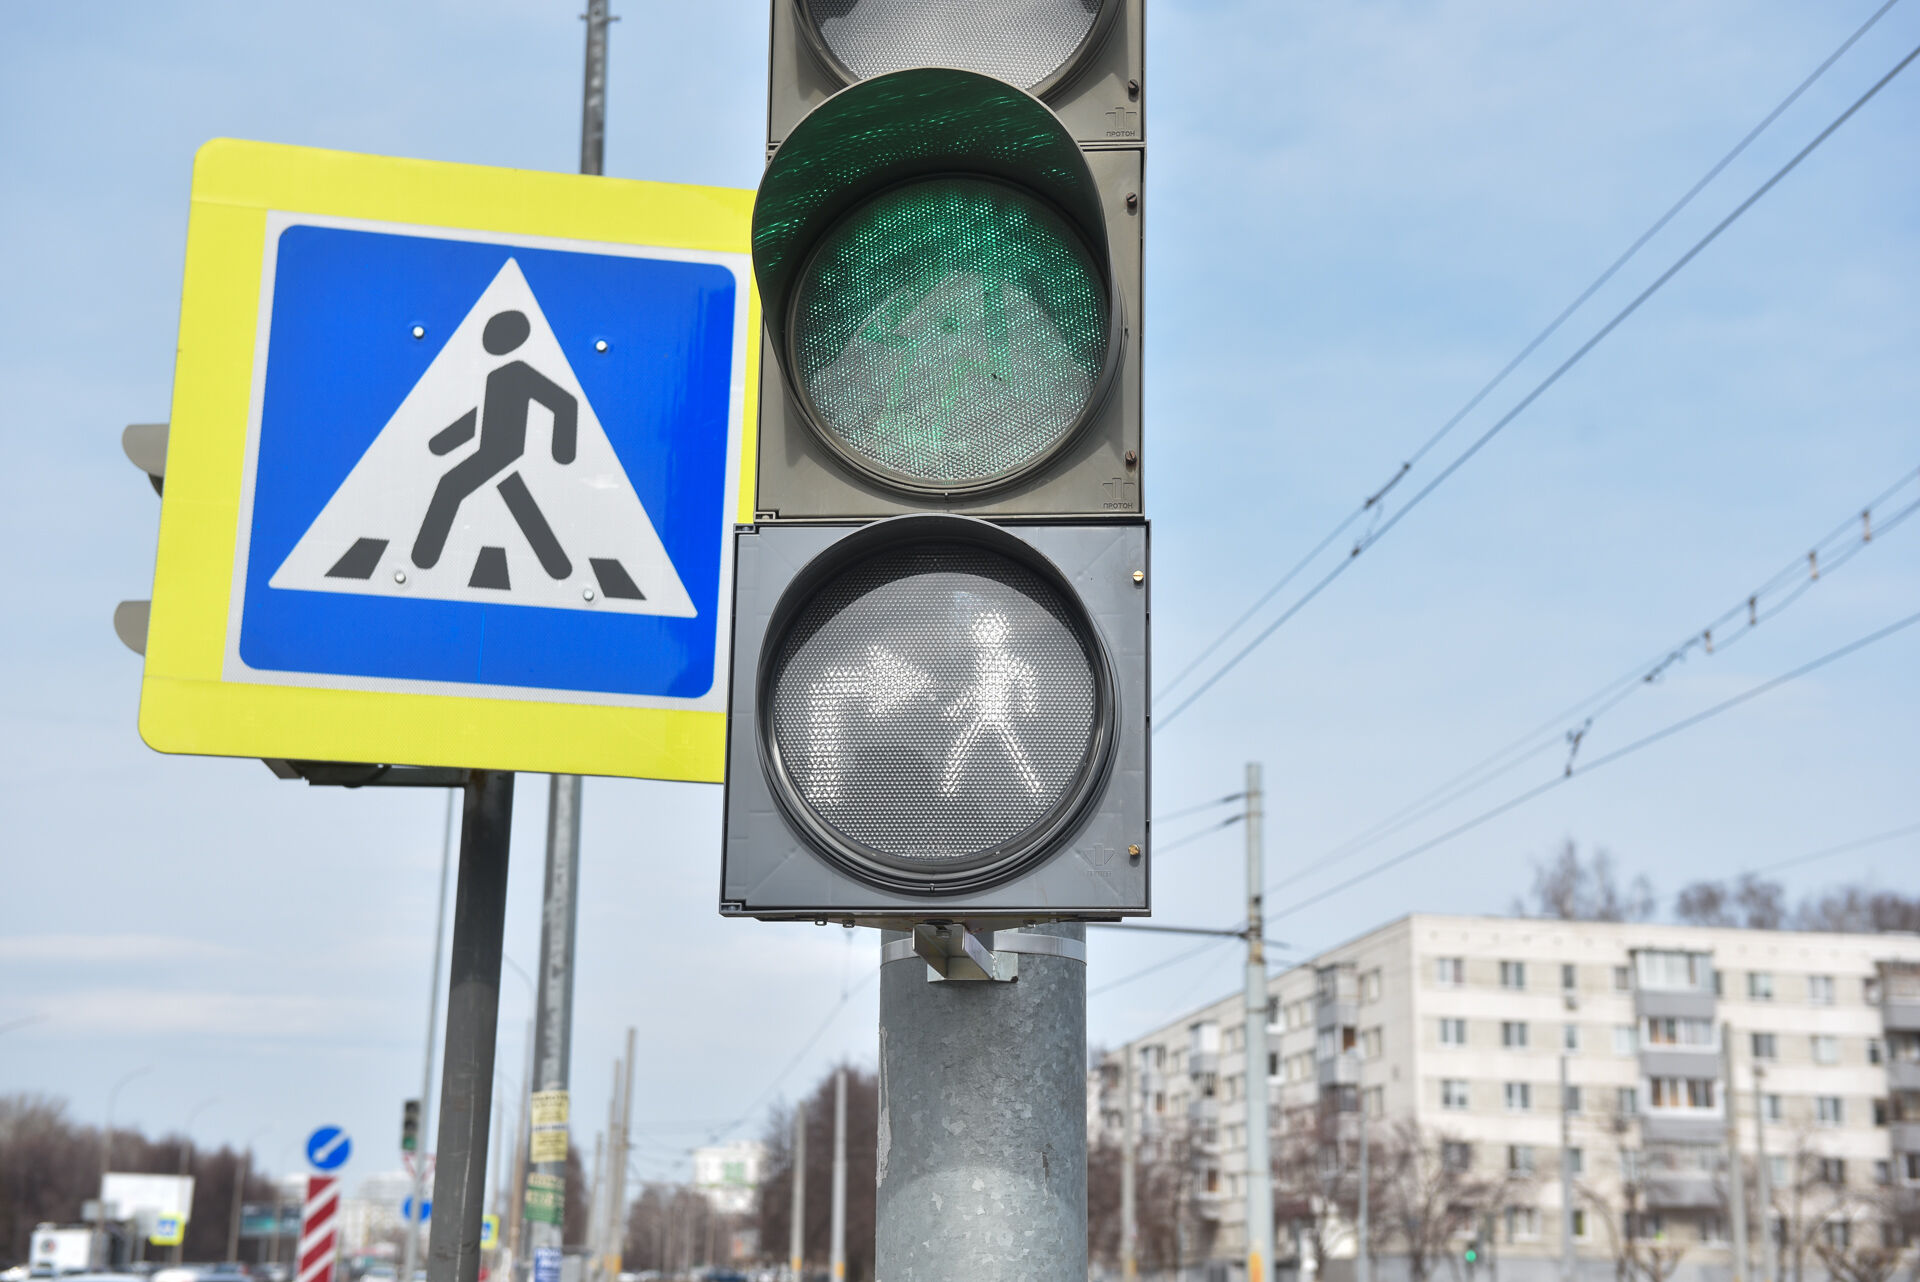 В Челнах на пересечении проспектов Сююмбике и Вахитова изменится режим работы светофора